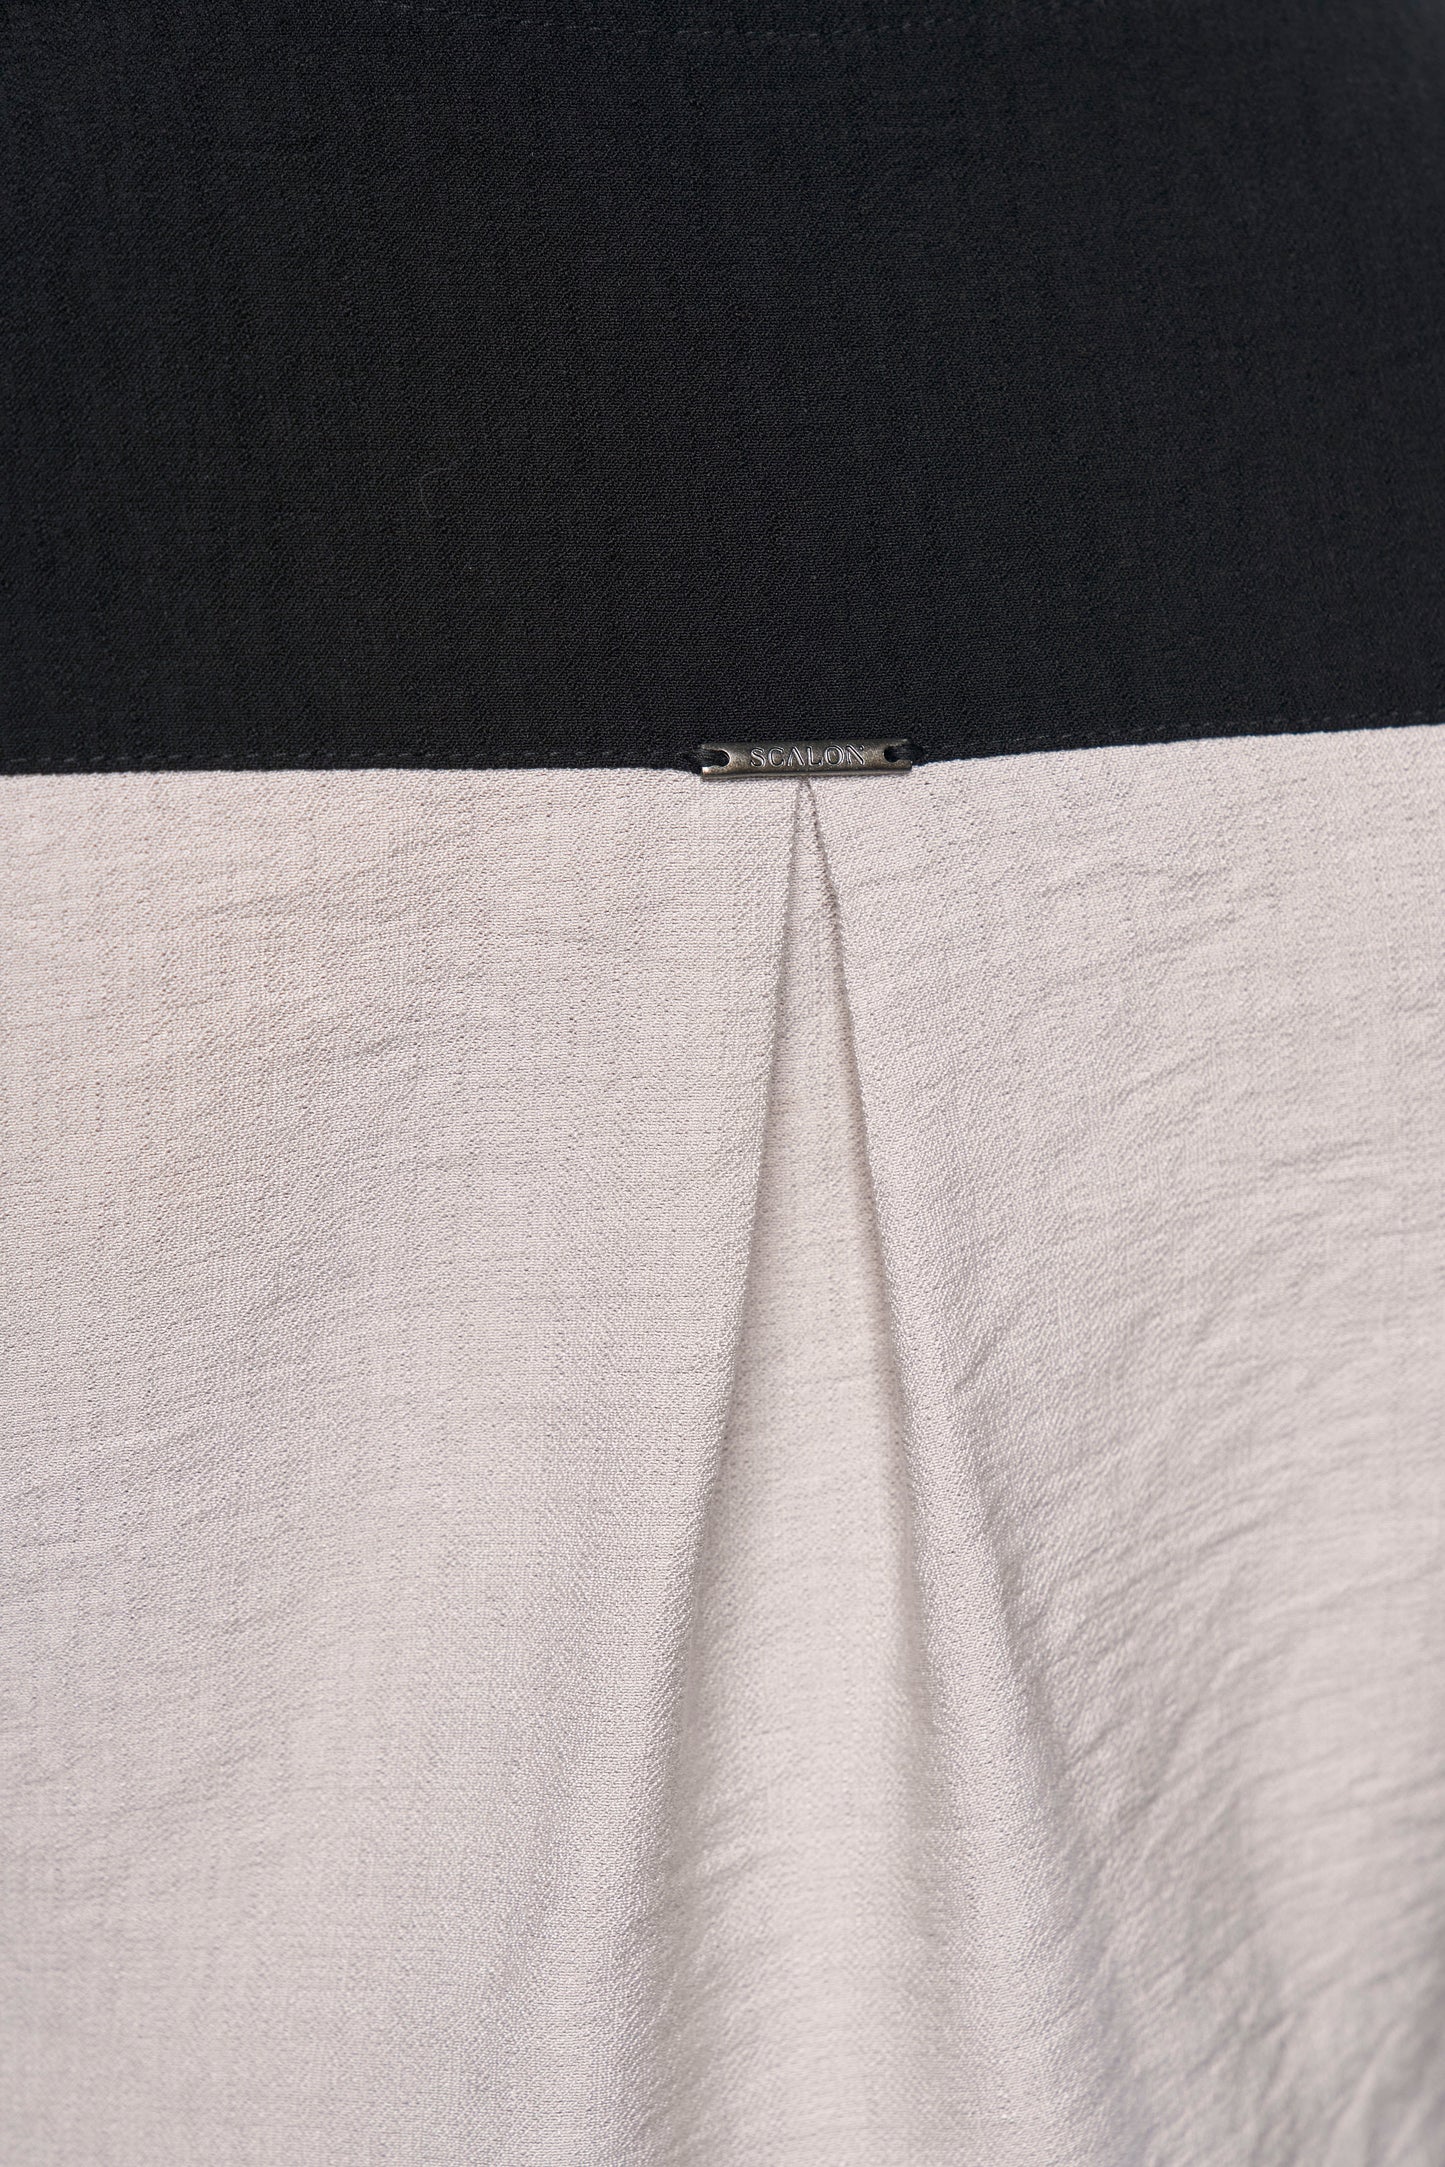 blusa viscose manga longa com mix de tecidos